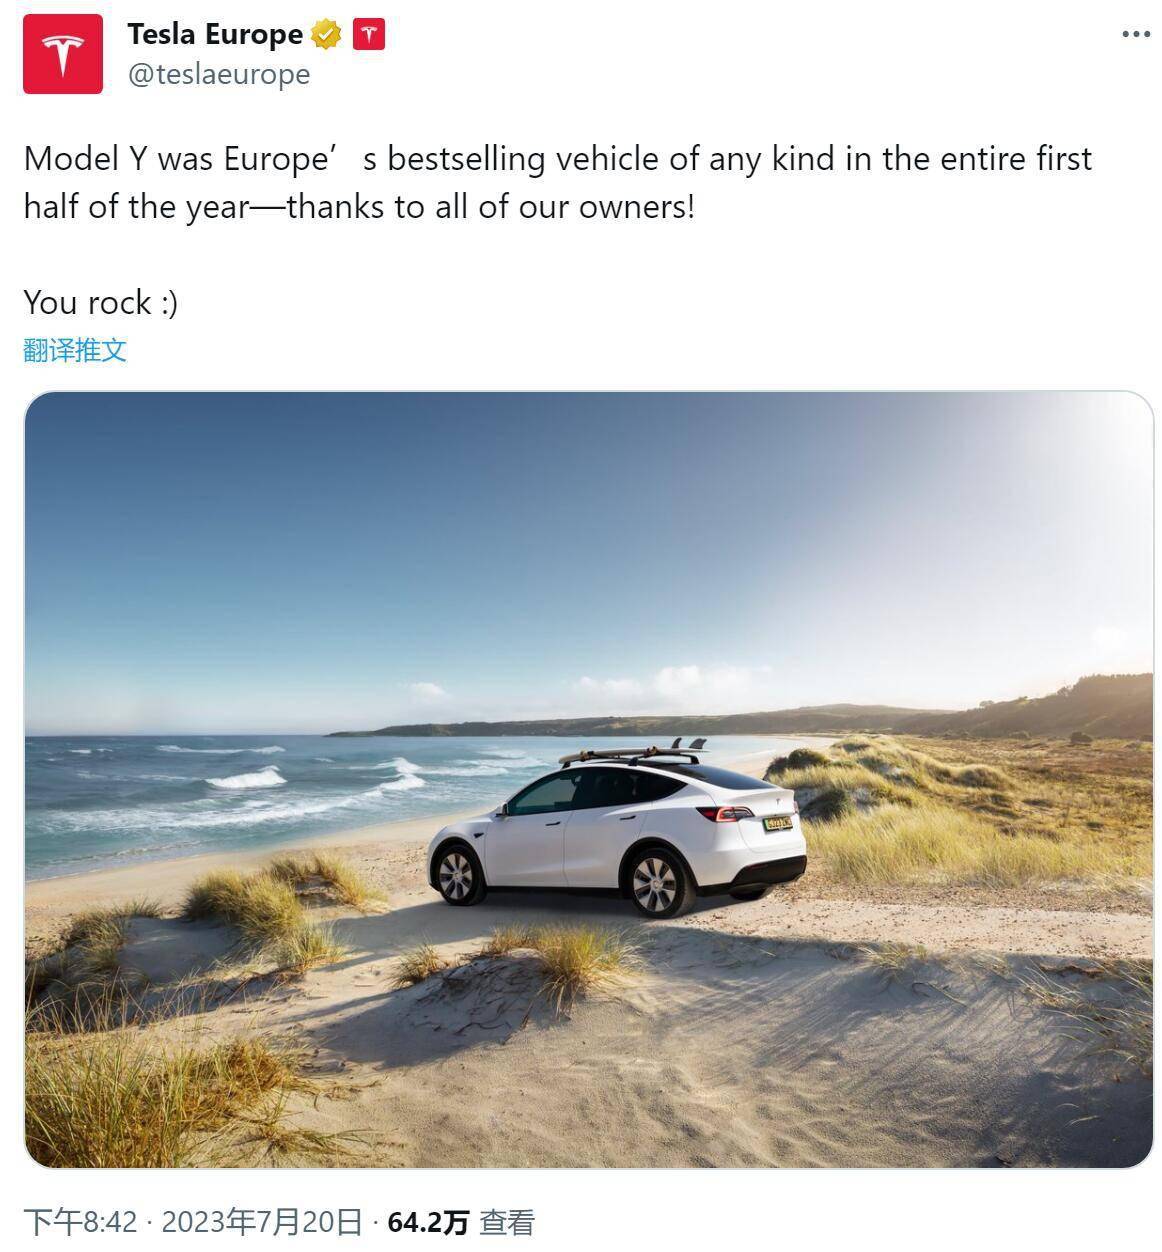 特斯拉宣布Model Y是上半年欧洲全品类销量最高车型 但官方并没有给出数据来源